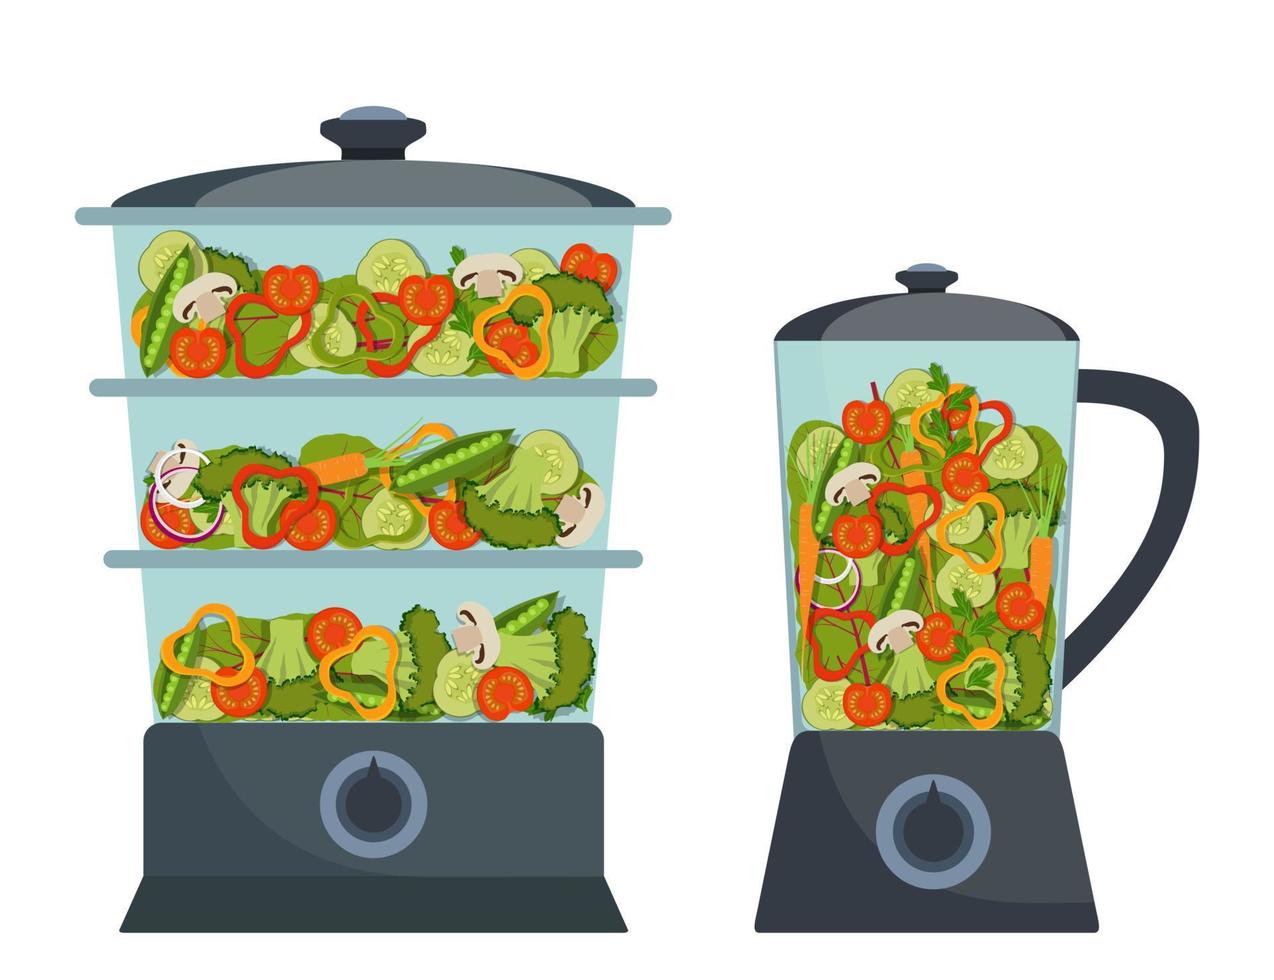 double chaudière et mélangeur modernes et élégants avec différents légumes à l'intérieur. brocoli, poivron, tomate rouge, carotte, oignon, légumes verts. illustration vectorielle dans un style plat. vecteur